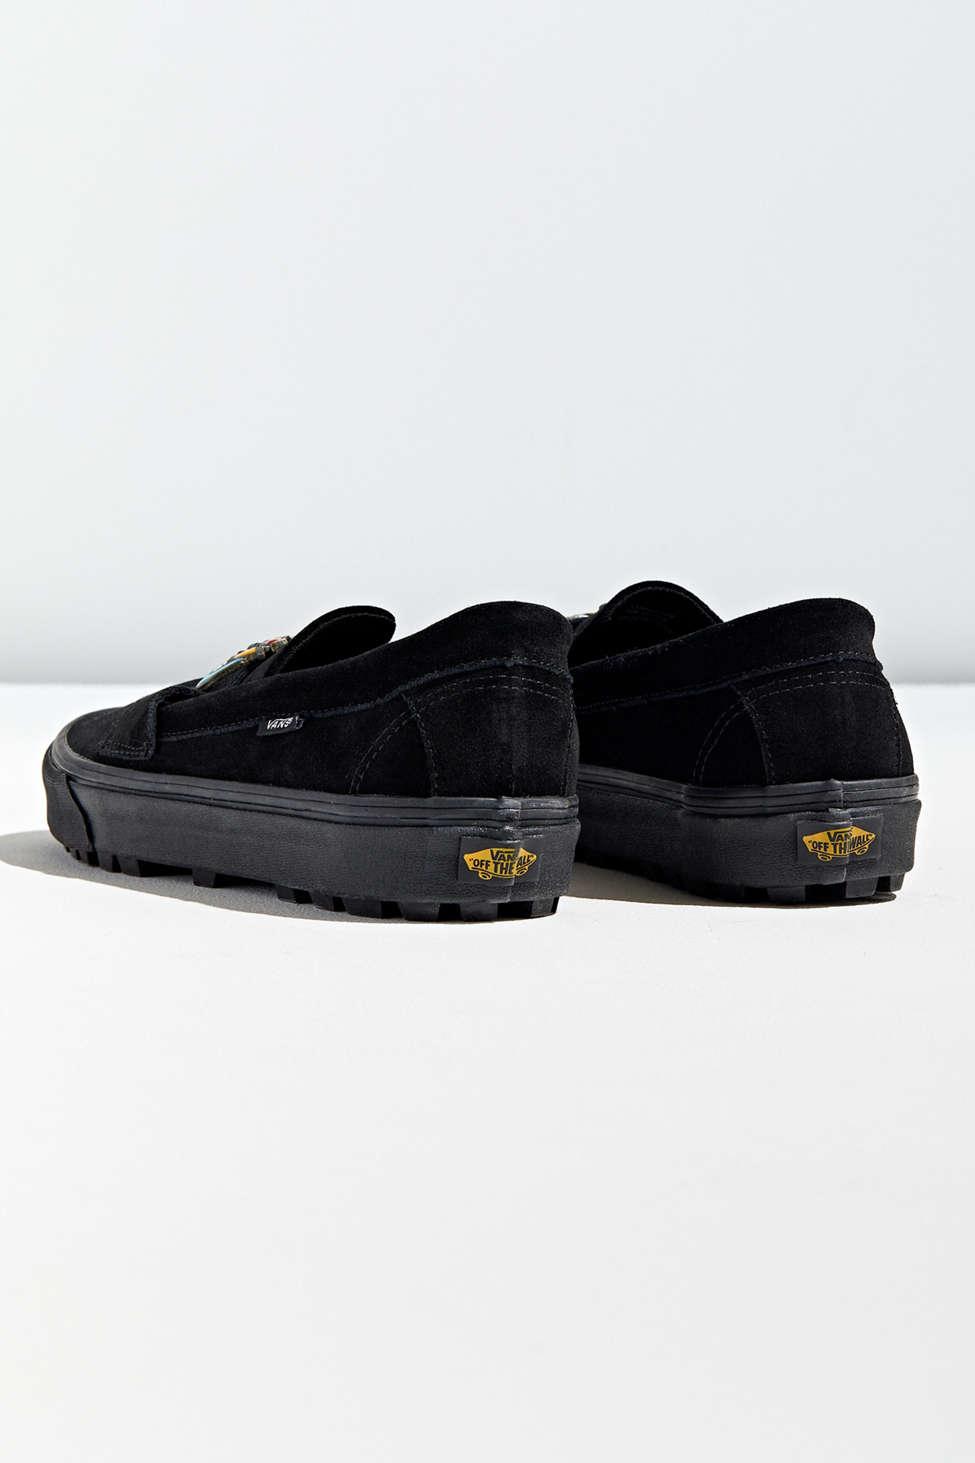 Vans Vans X Vivienne Westwood Style 53 Orb Shoe in Black for Men